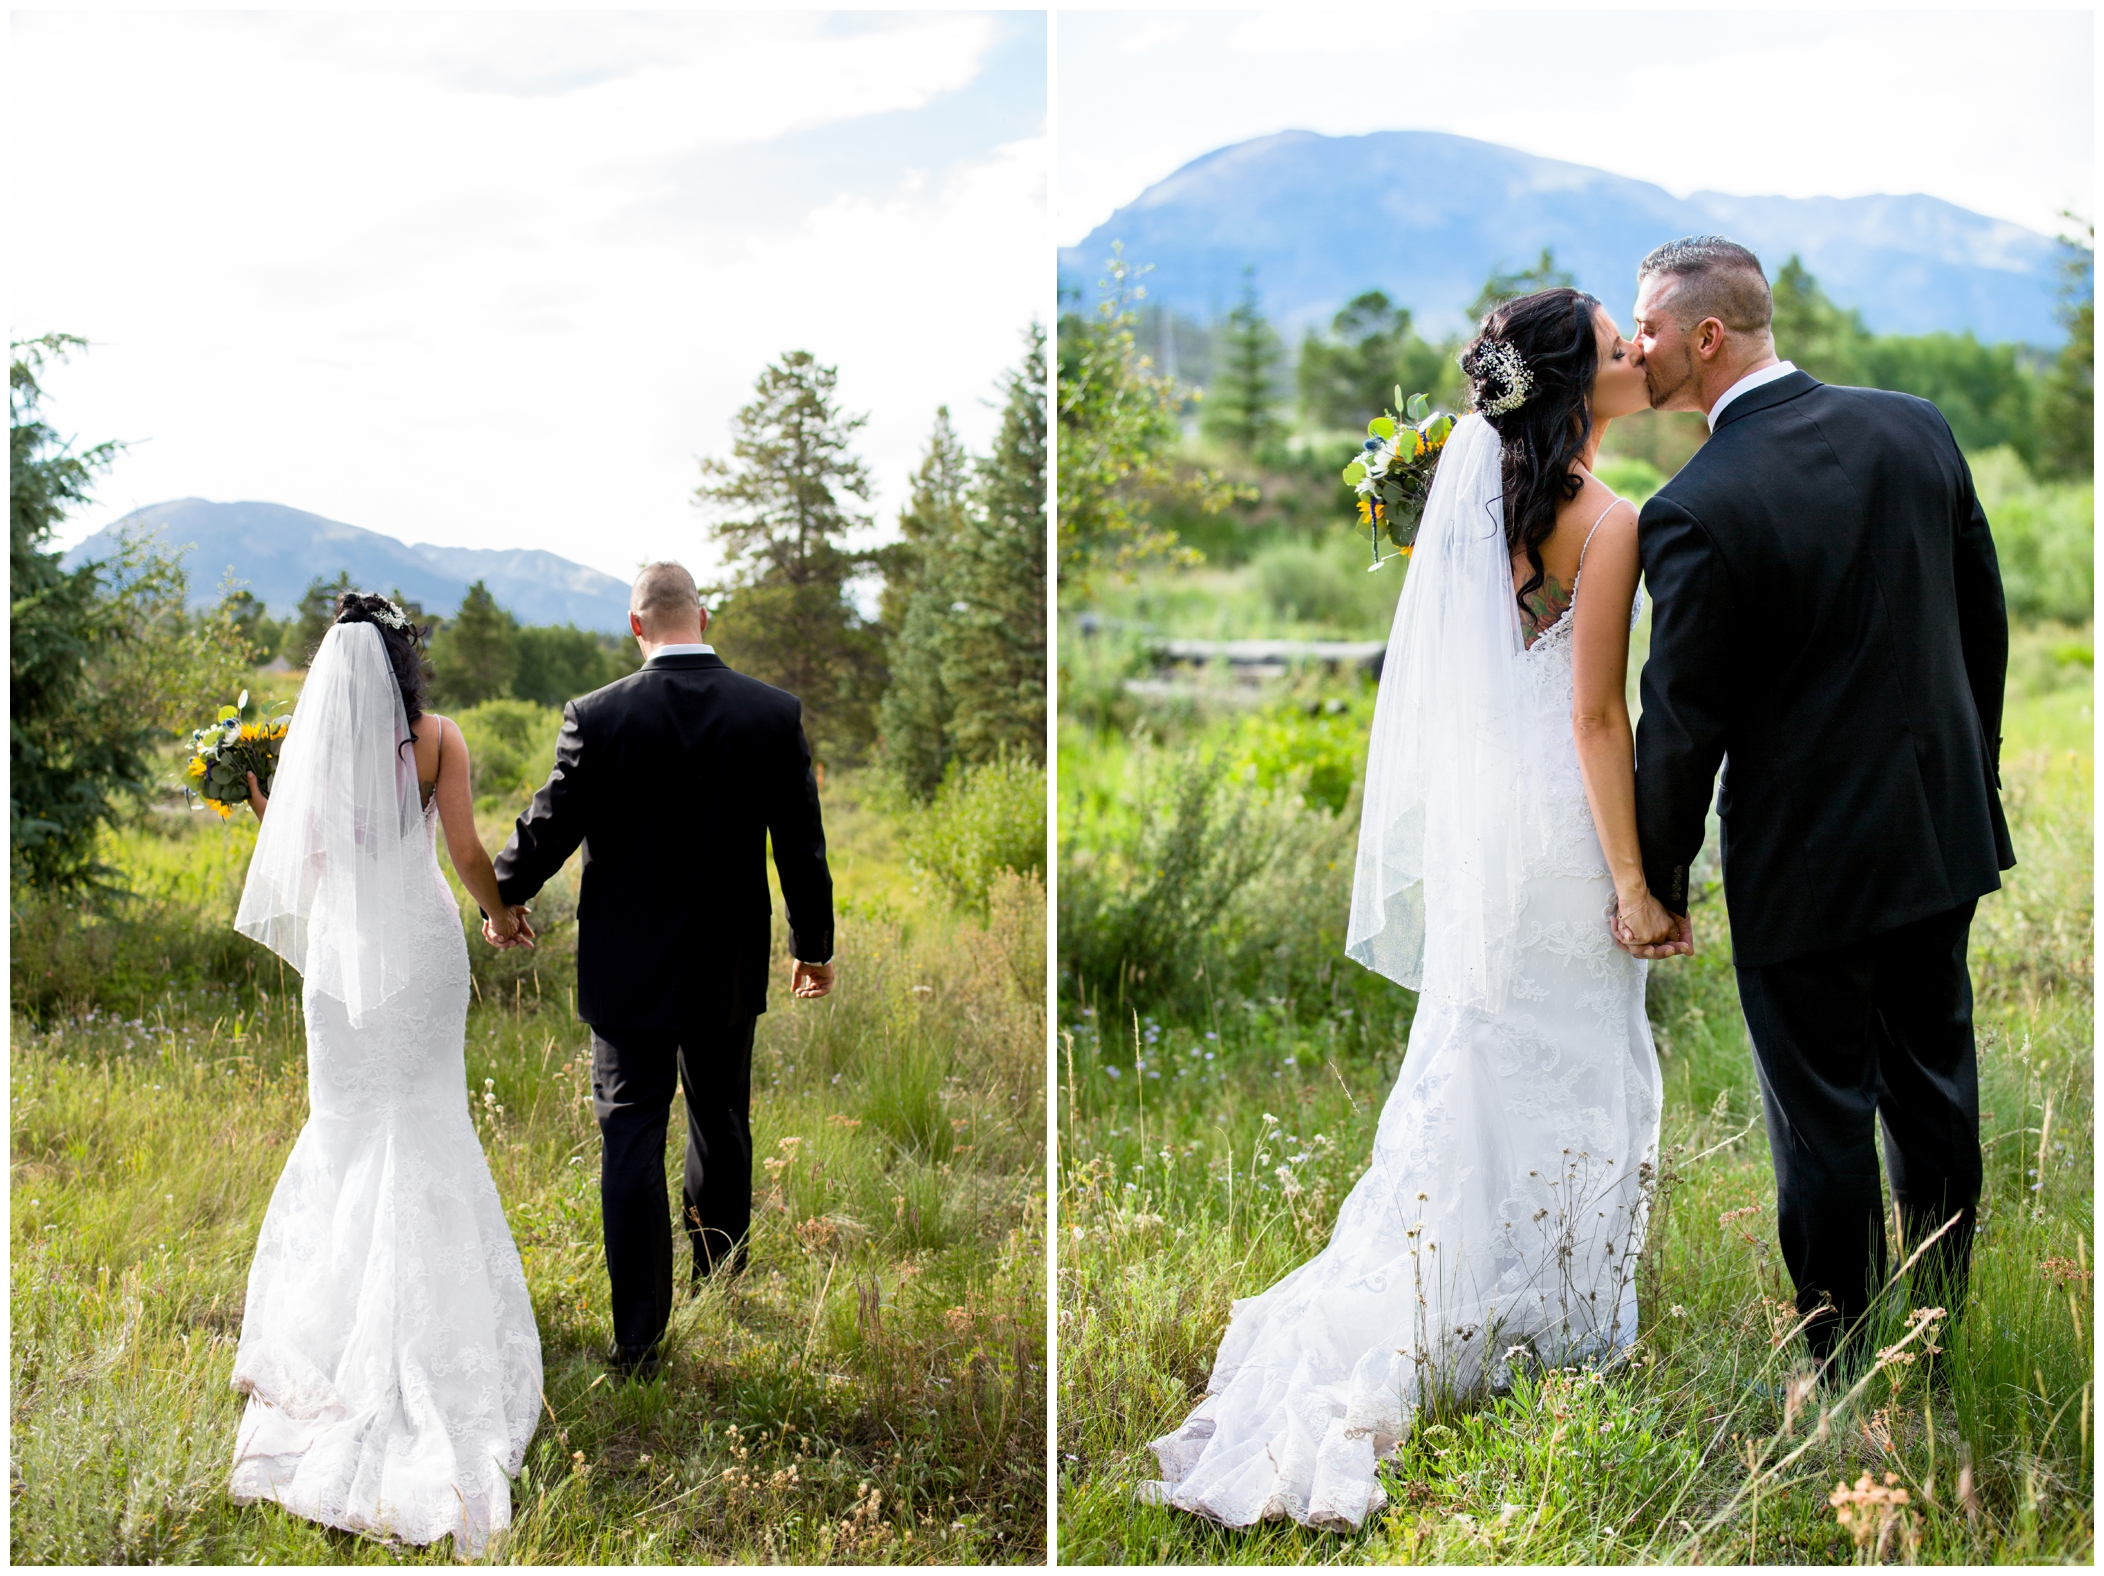 Colorado mountain wedding inspiration 